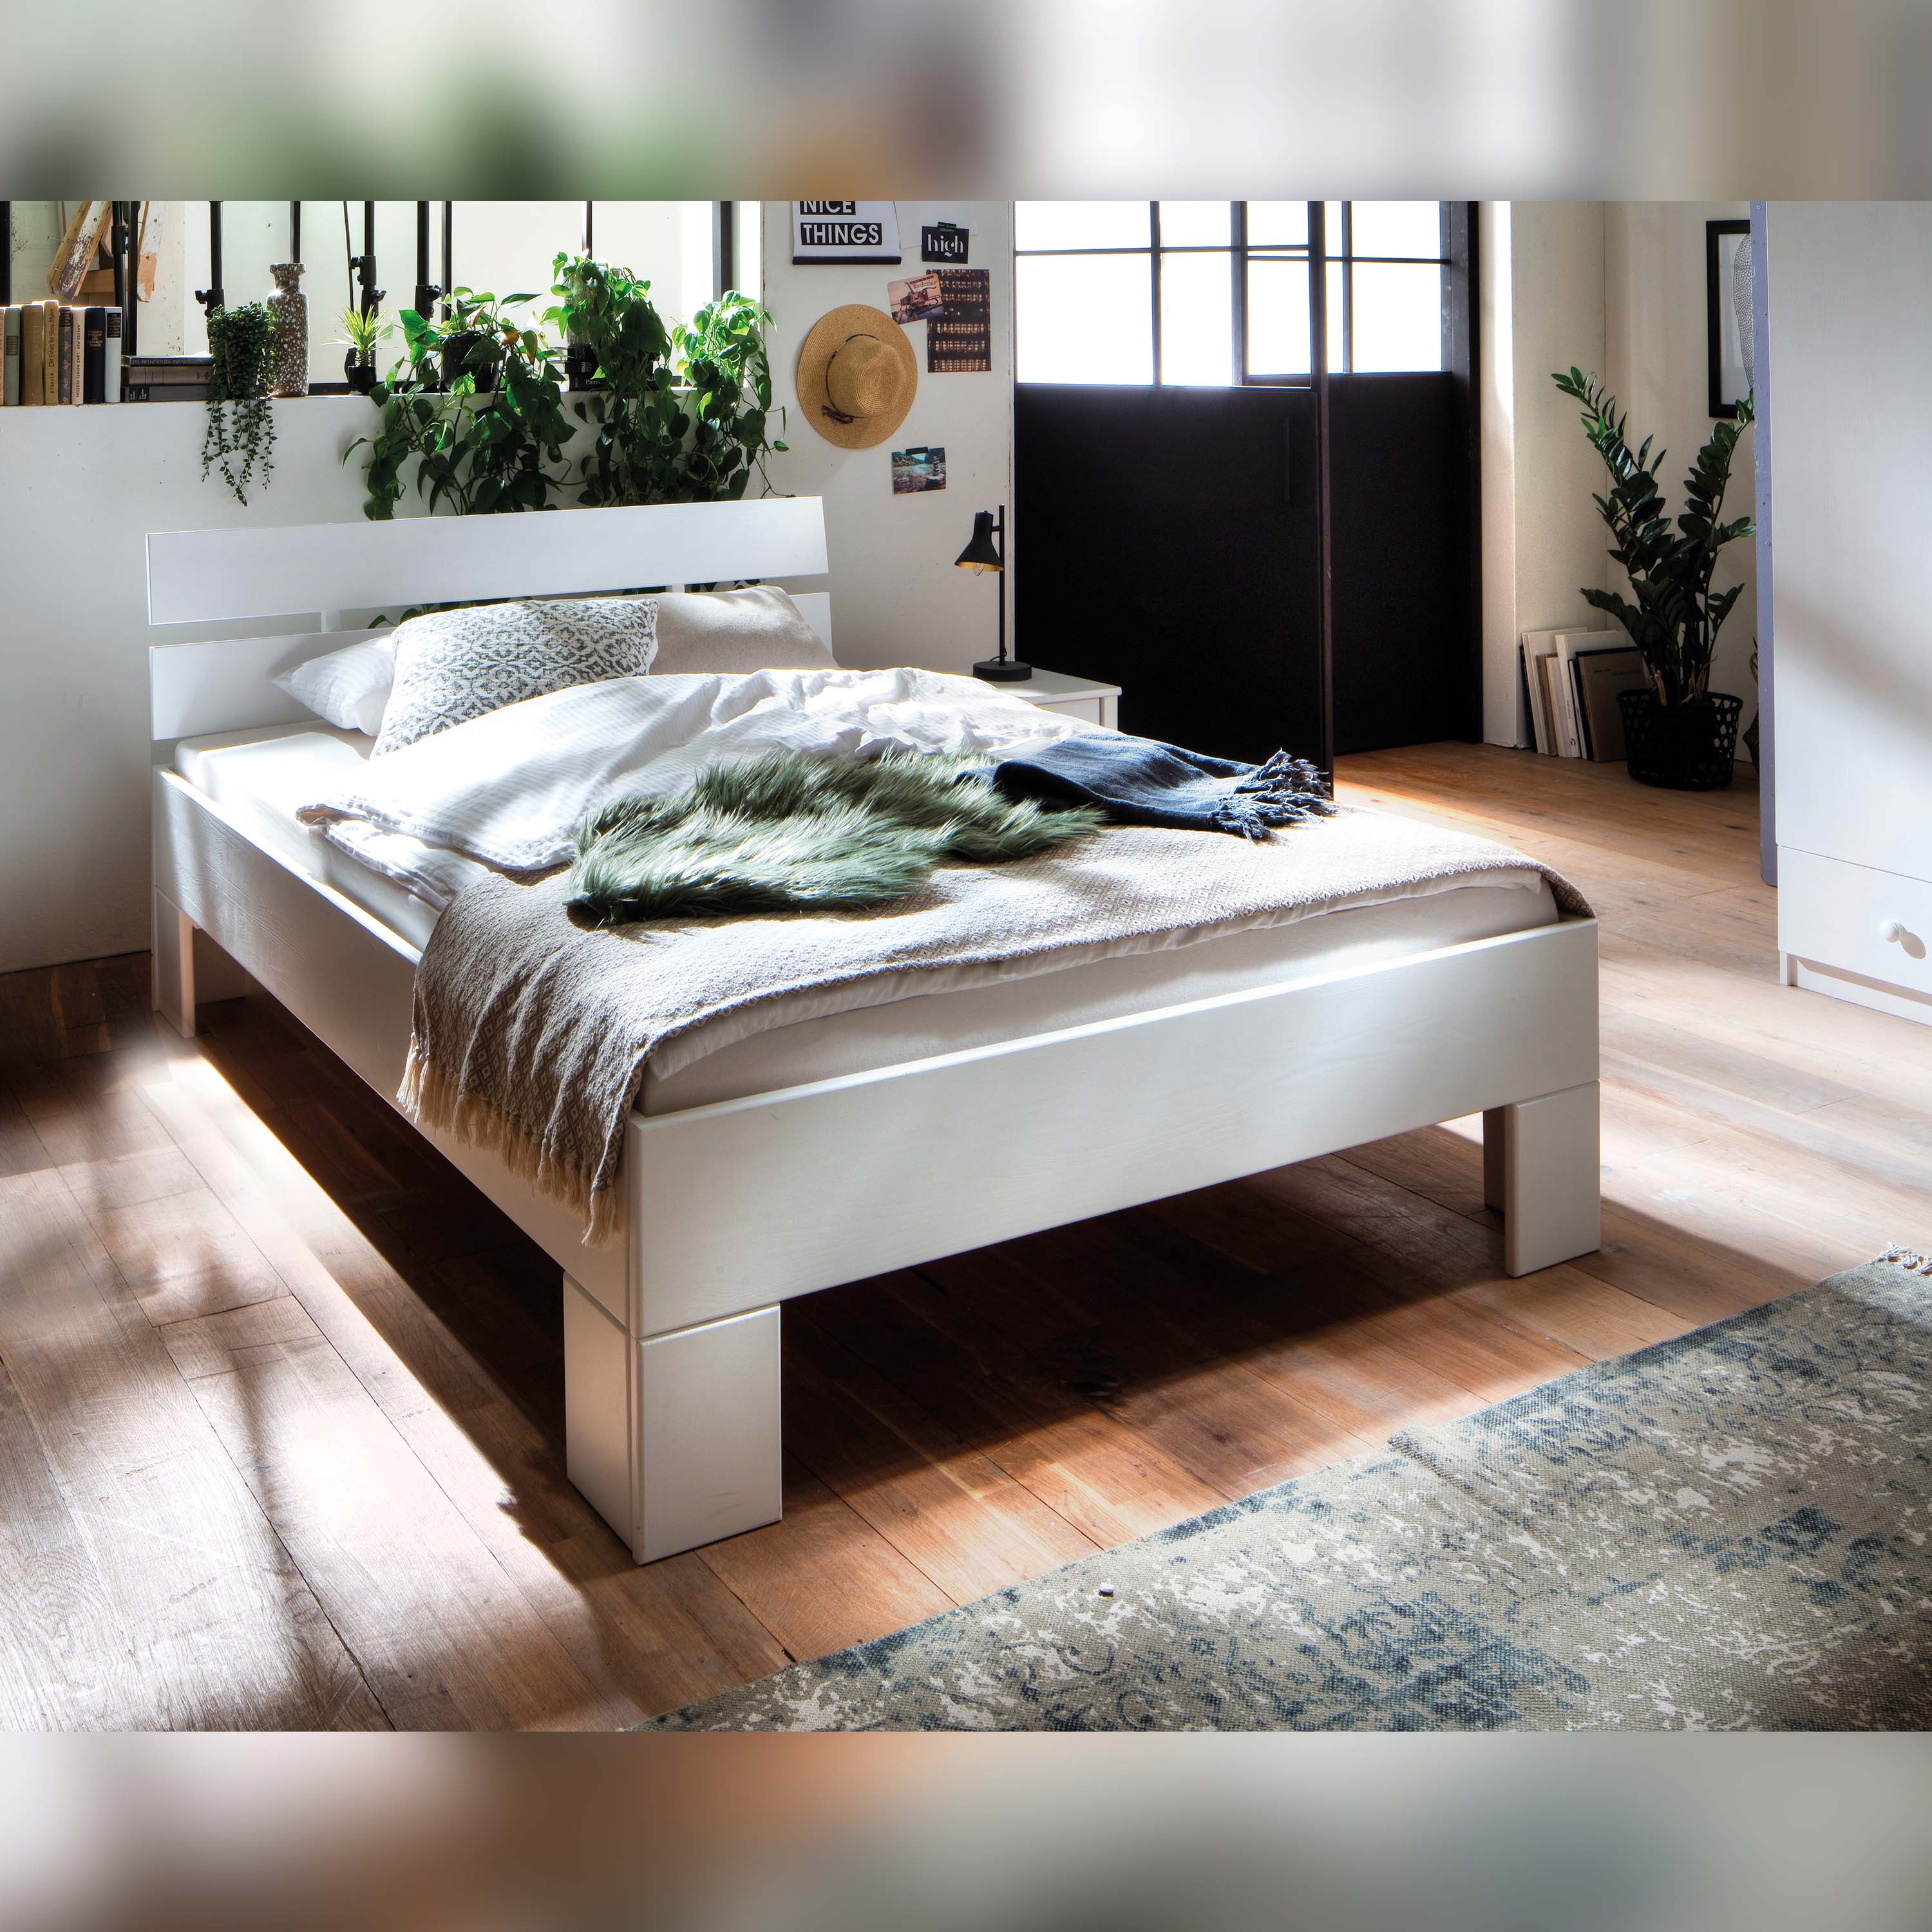 Betten-ABC Skadi - Massivholzbett aus Fichte mit Kopfteil, Farbton weiß lackiert